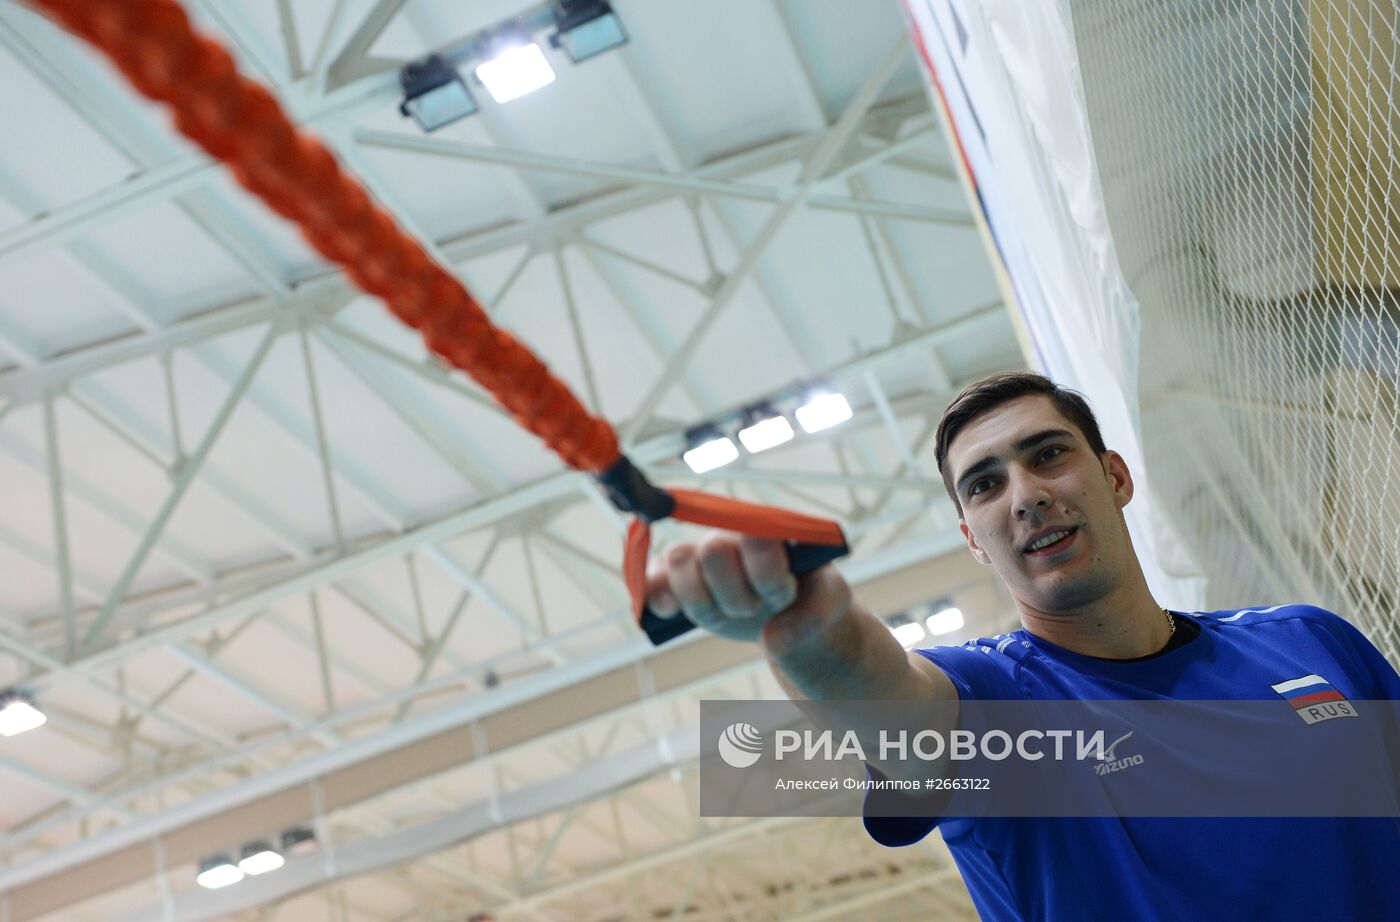 Волейбол. Тренировка мужской сборной России